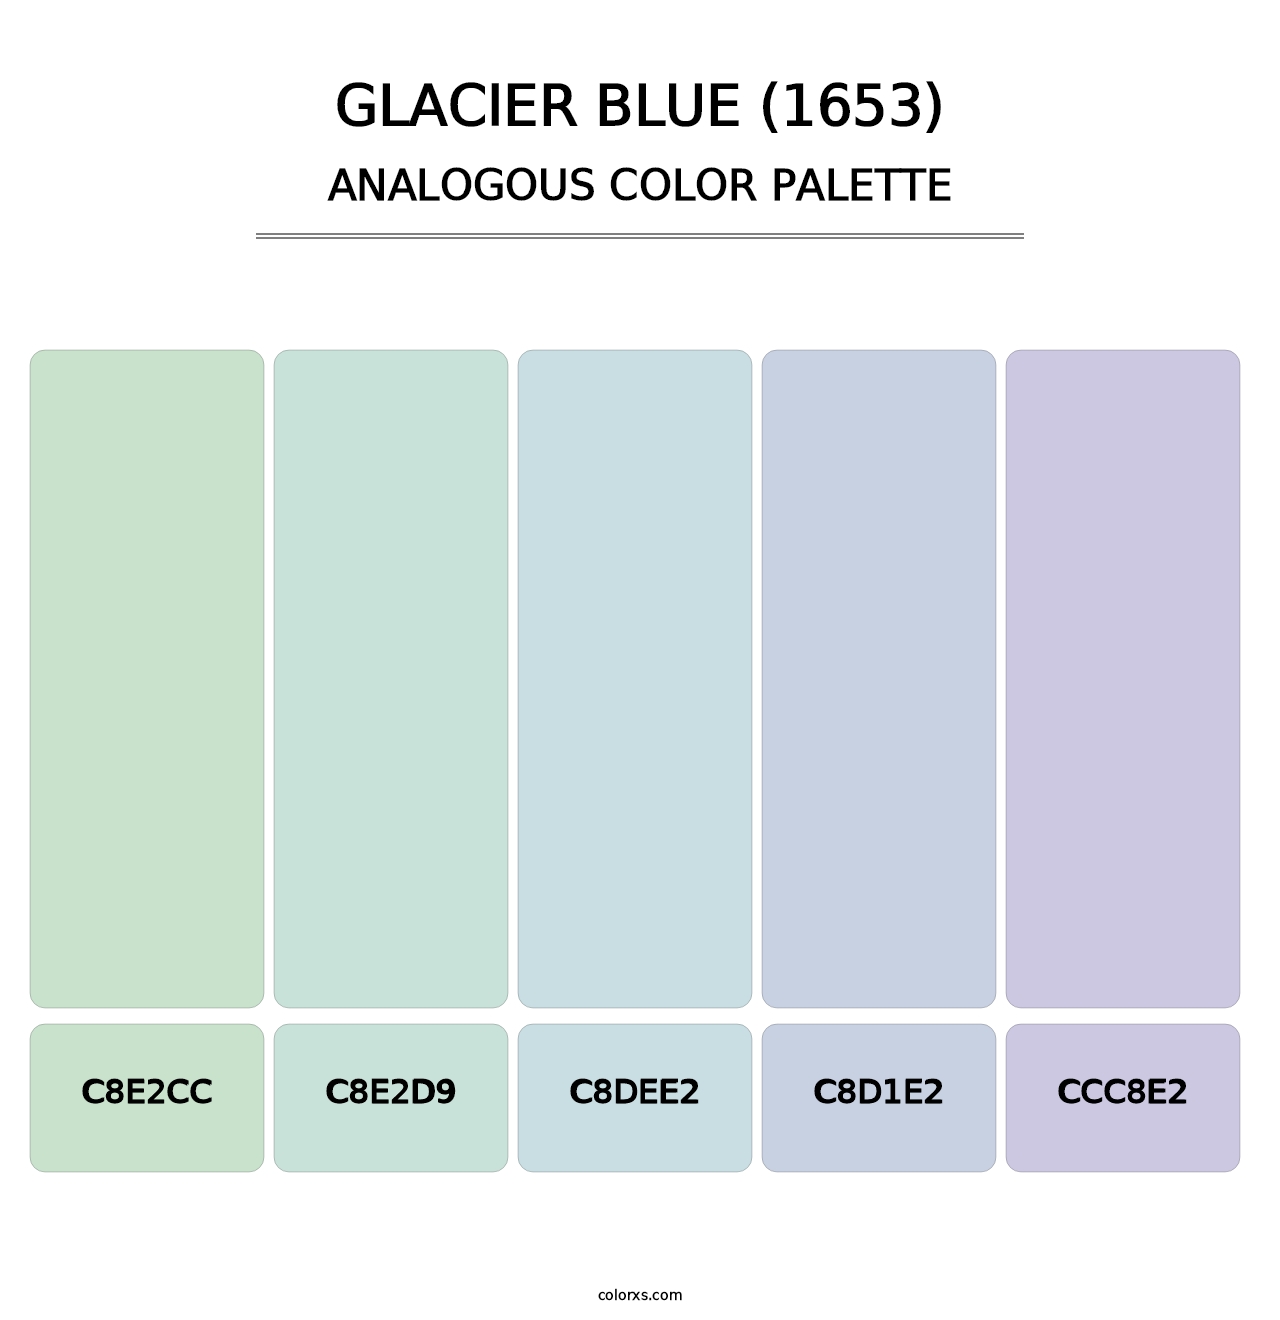 Glacier Blue (1653) - Analogous Color Palette